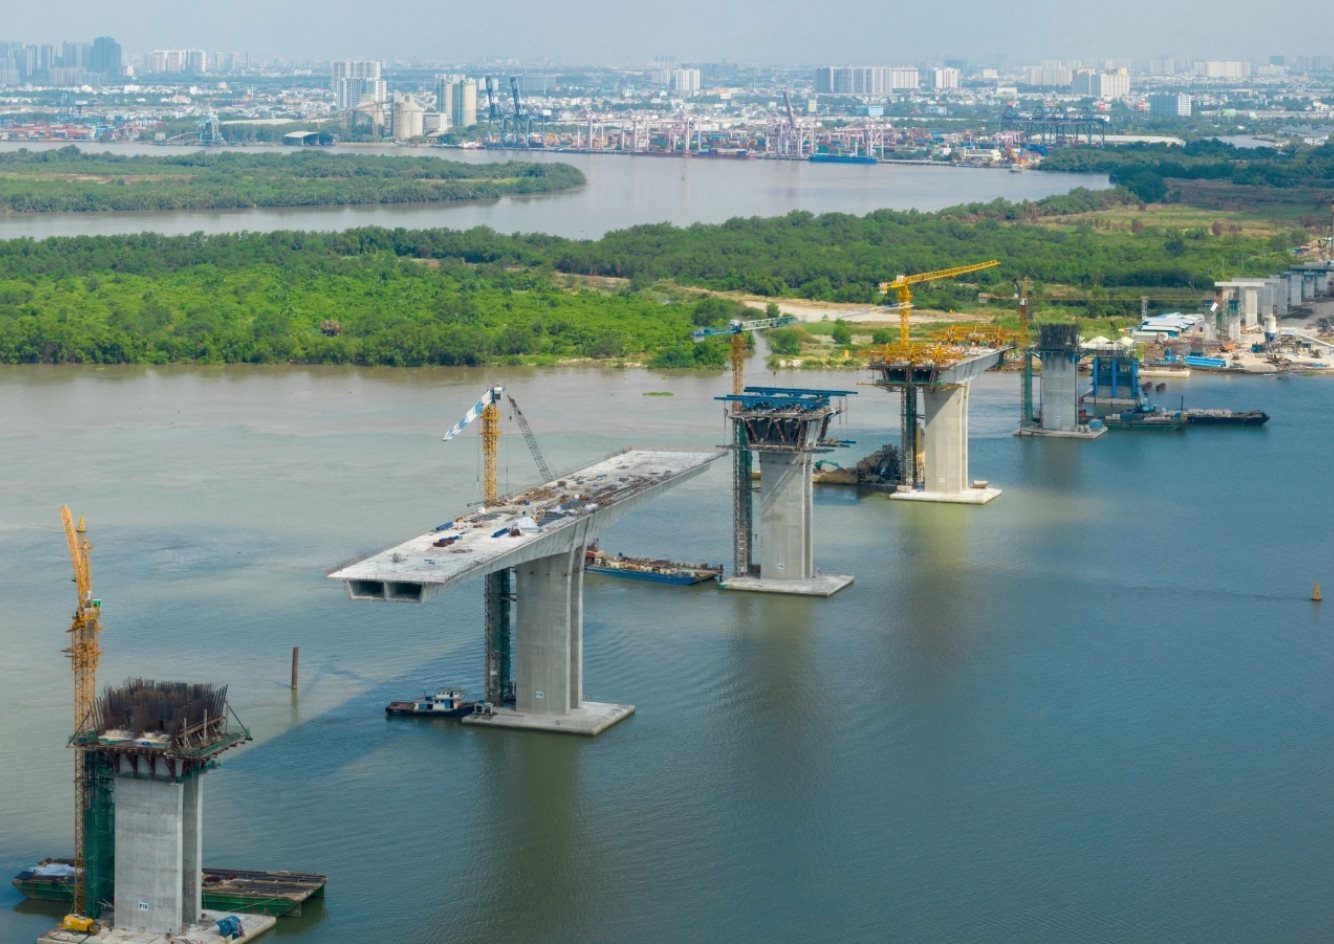 
Loạt cây cầu nối, sân bay Long Thành sắp hiện hữu, bất động sản Nhơn Trạch (Đồng Nai) có nhiều diễn biến mới
